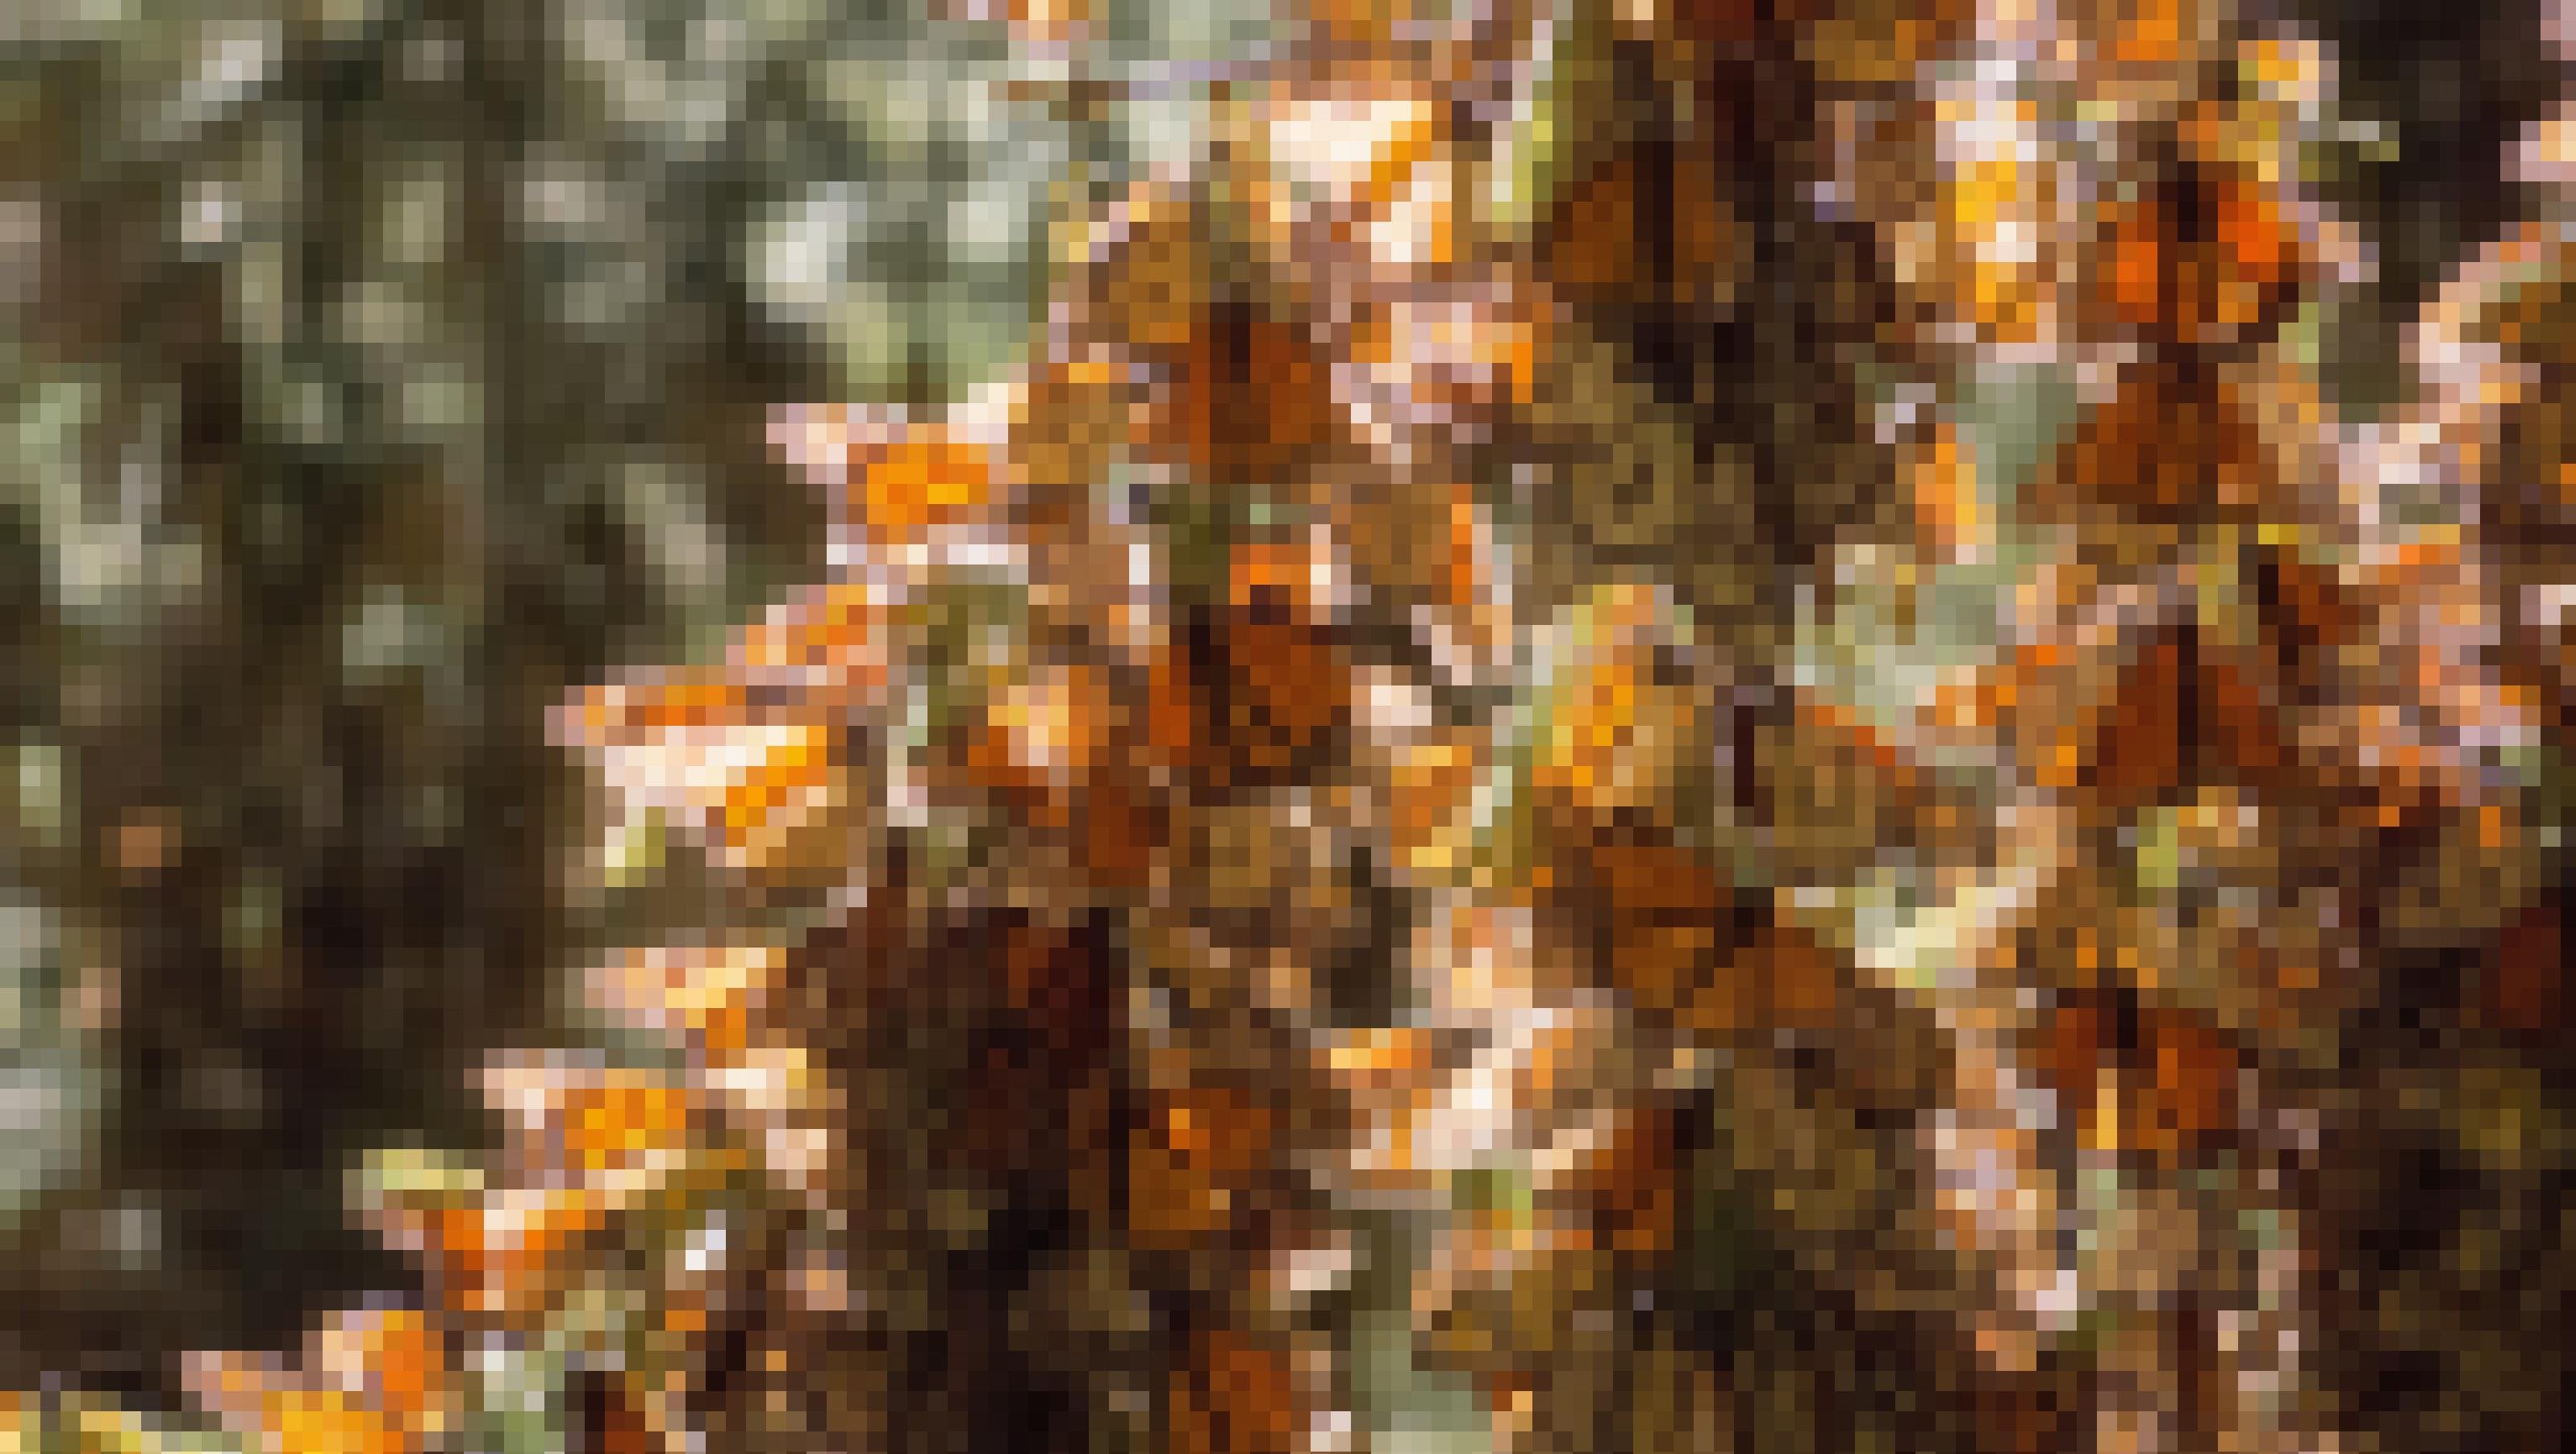 Die auffallend großen und schönen orange-schwarz gefärbten Schmetterlinge namens Monarchfalter sitzen in so großen Mengen auf den Ästen eines Baumes, dass diese vor lauter Insekten kaum noch zu sehen sind.